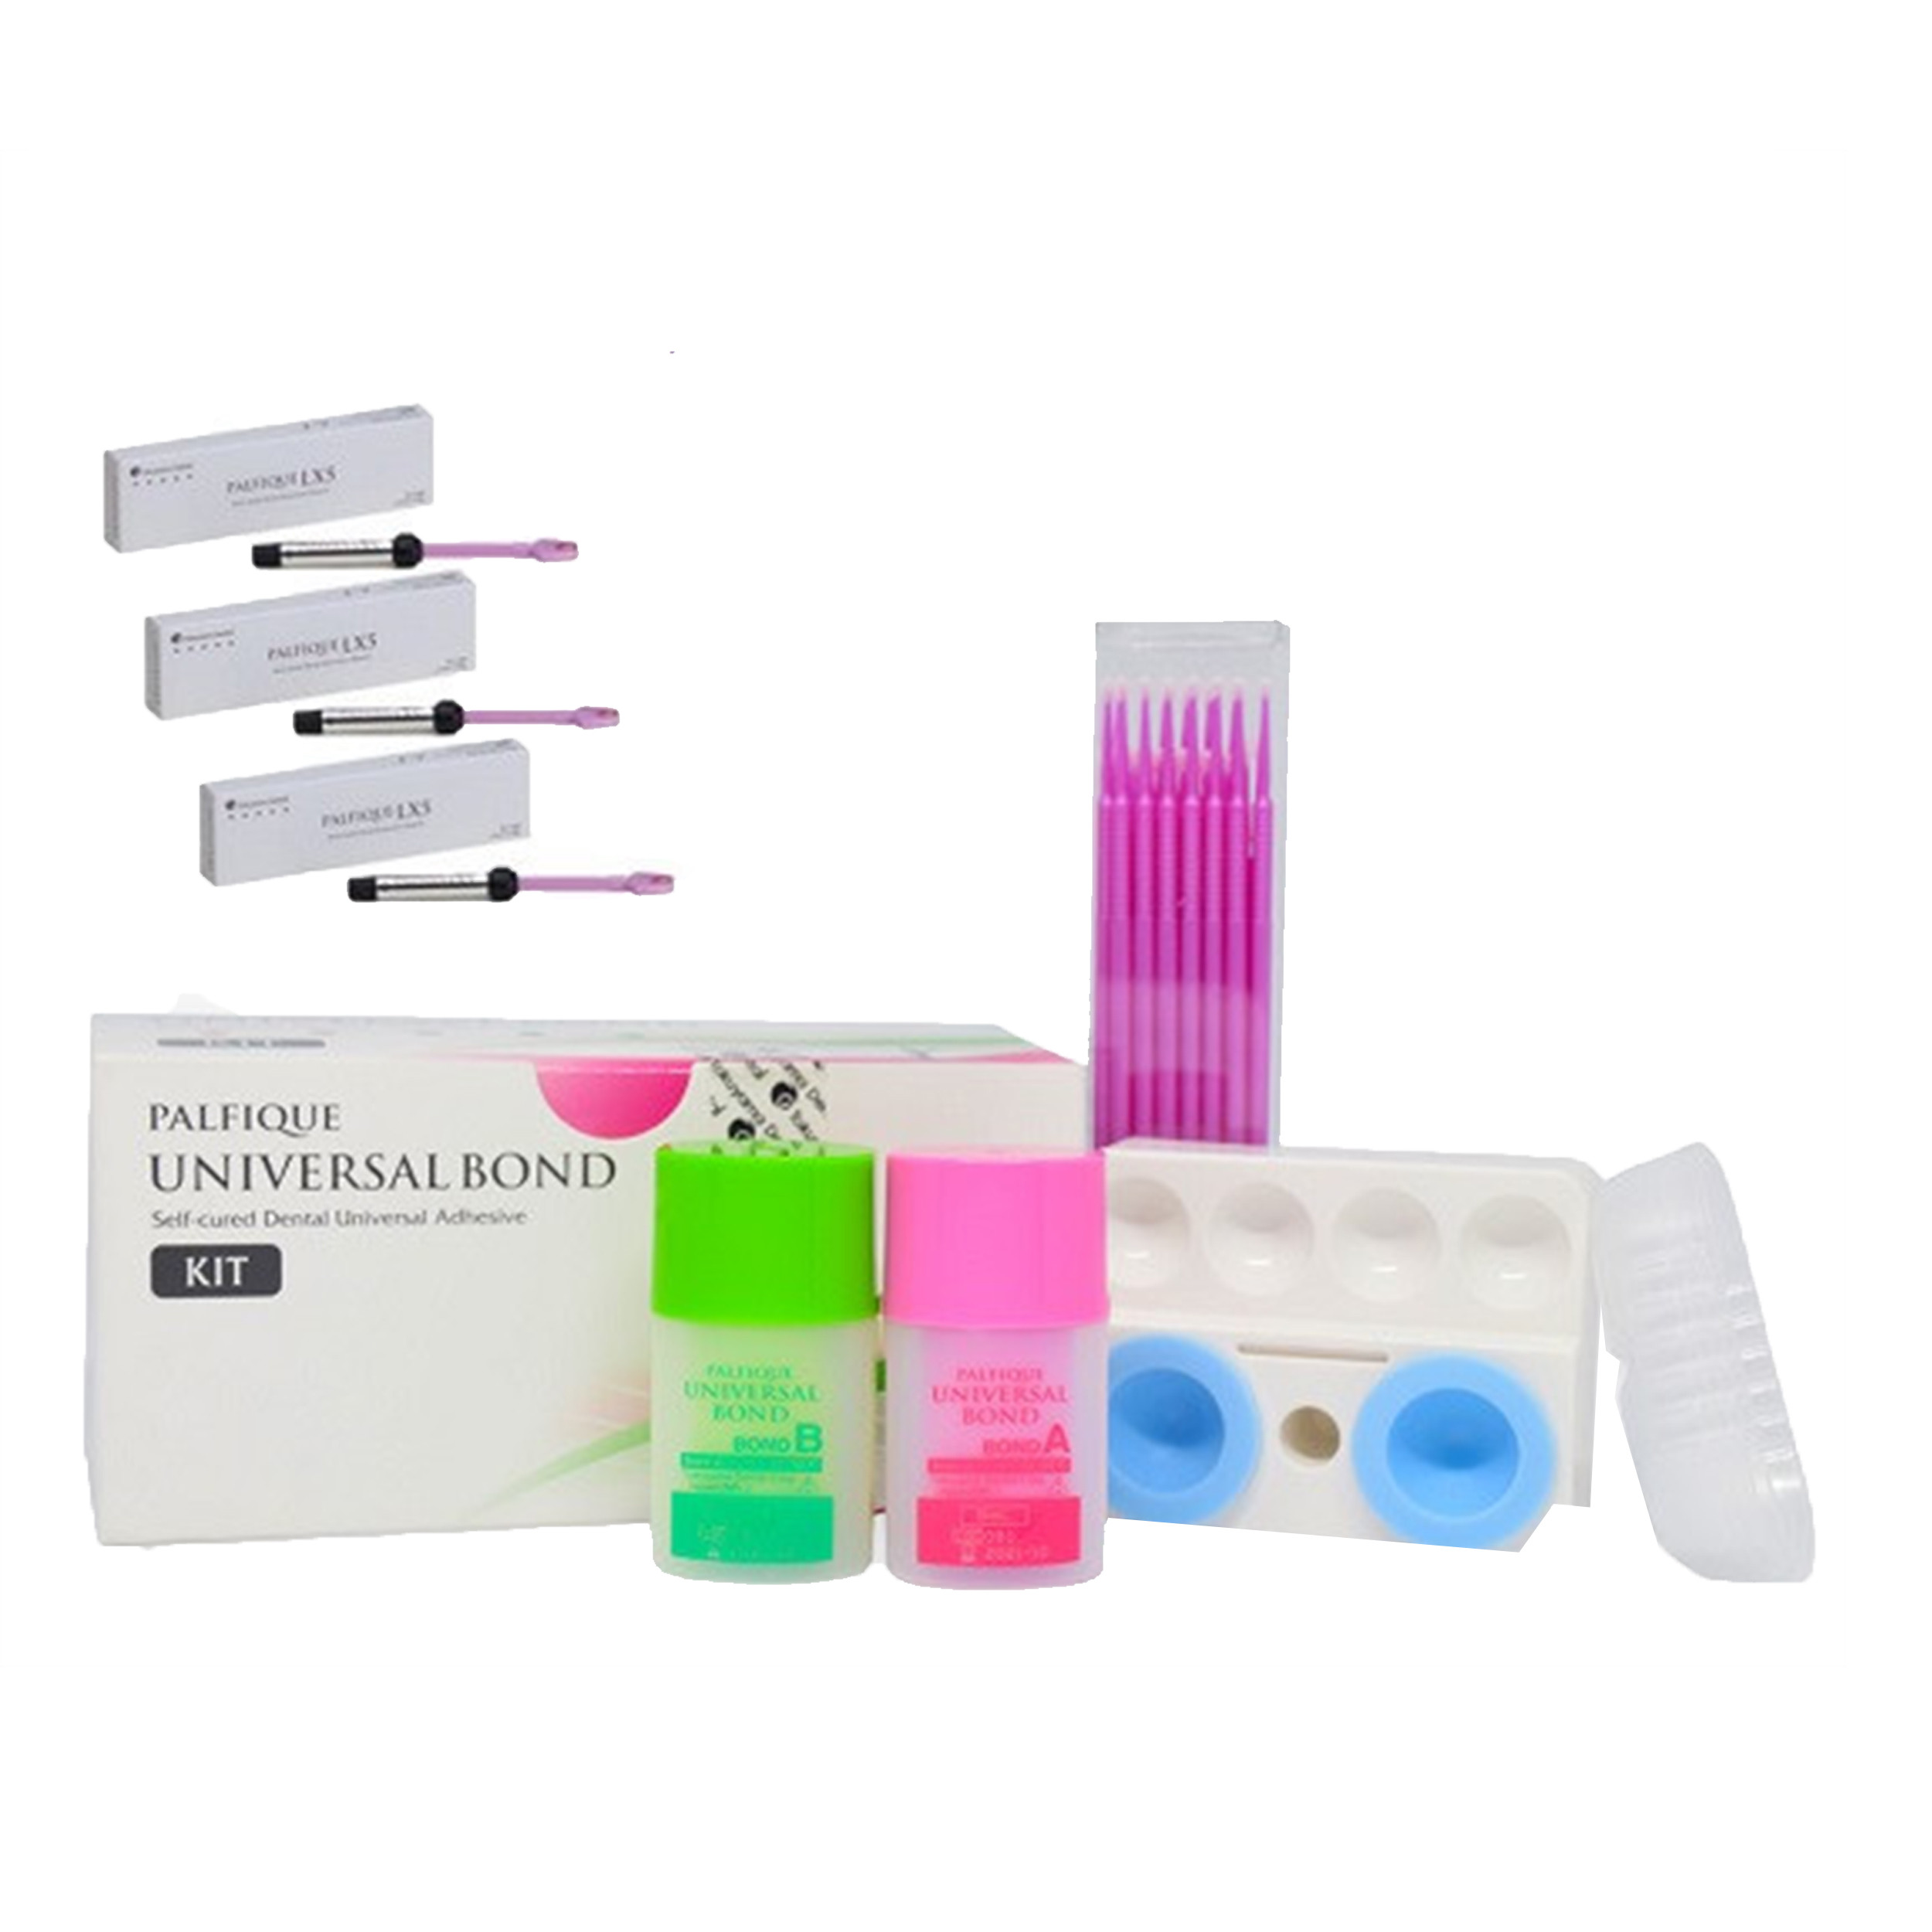 Offer Tokuyama Palfique Lx5 3 x Syringes with Palfique Universal Bond Kit